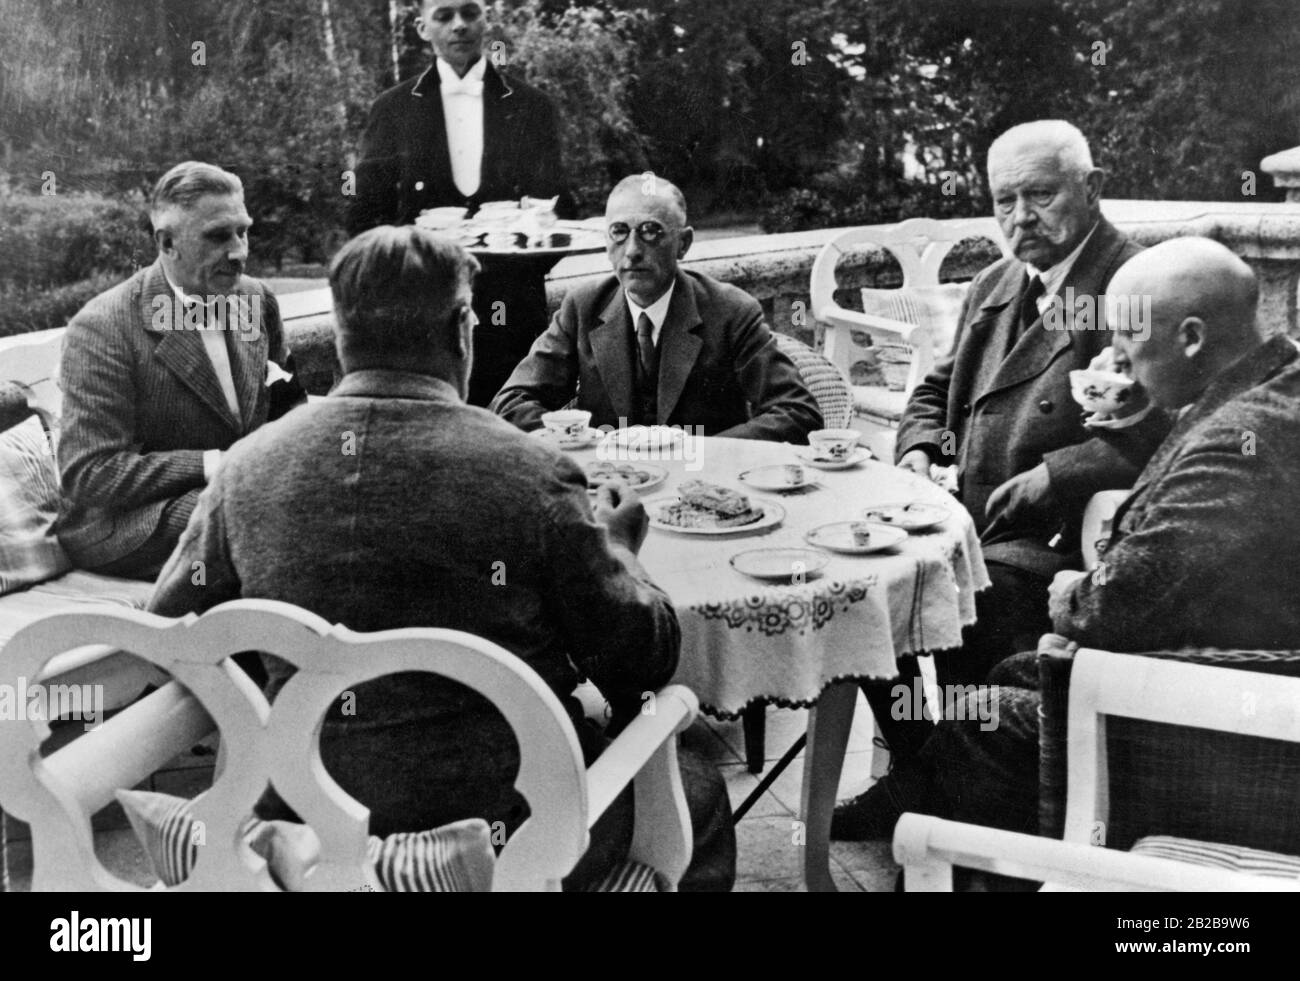 Paul von Hindeburg during a meeting in Neudeck. With him from left to right: Franz von Papen, Wilhelm von Gayl, Paul von Hindeburg, Kurt von Schleicher, Otto Meissner. Stock Photo